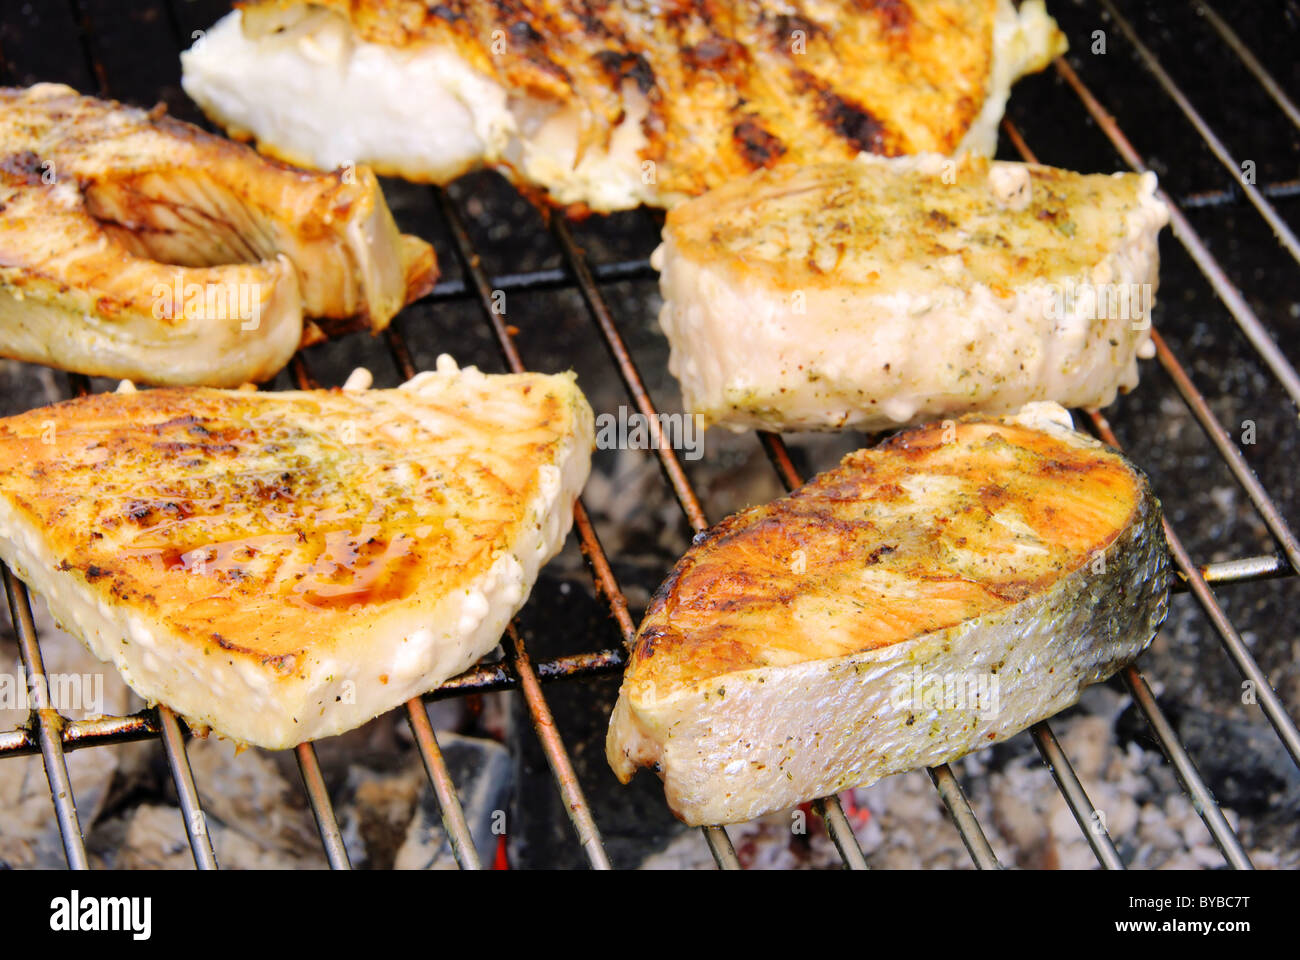 Grillen Fischsteak - Grillen Steak vom Fisch 11 Stockfoto